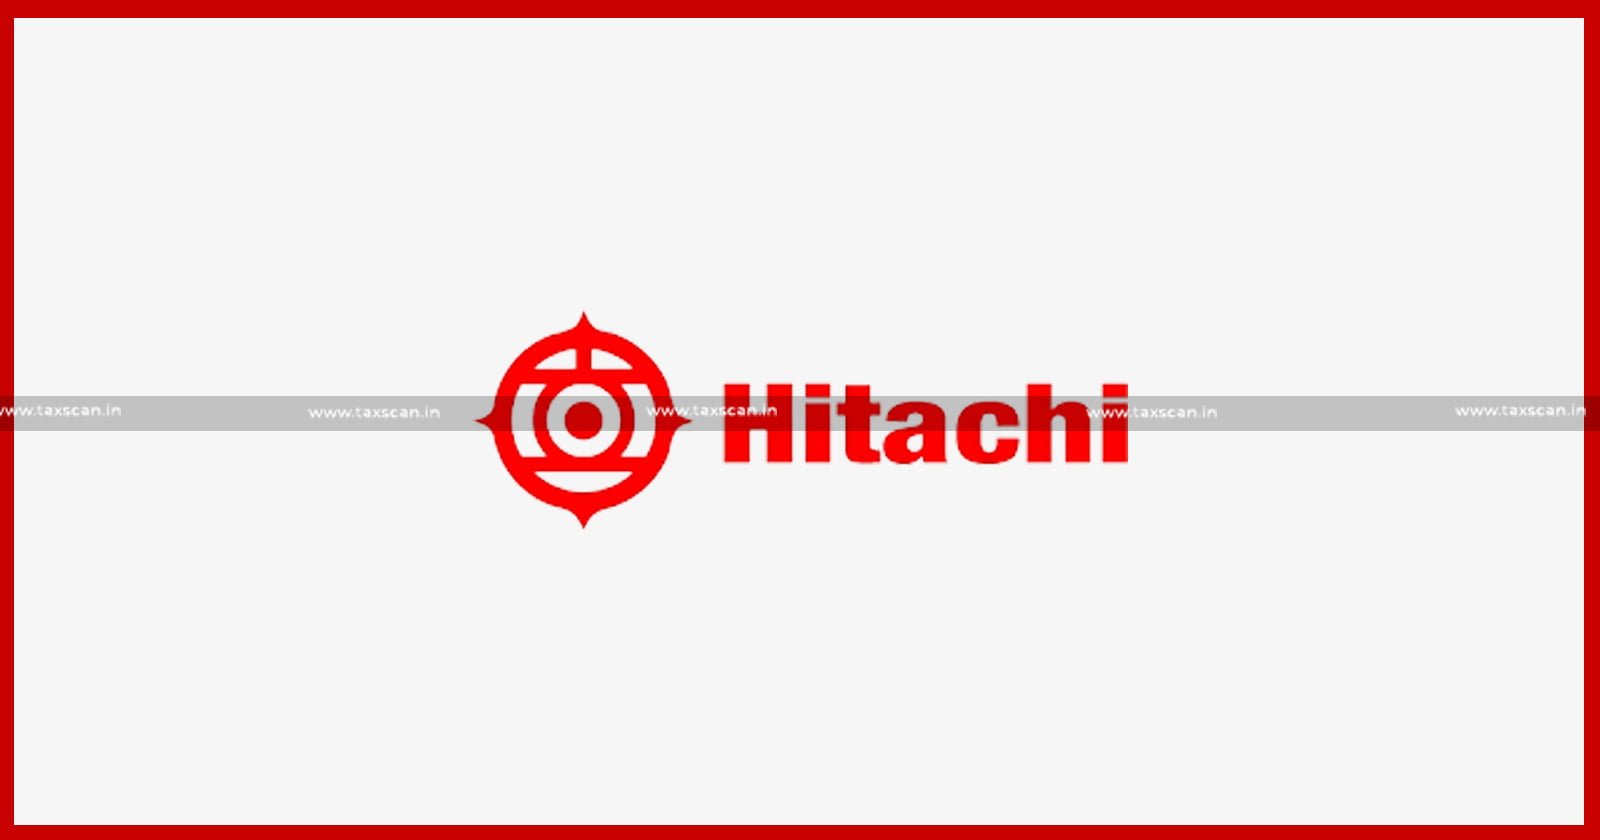 CA - B. Com - B. Com Vacancies - B. Com Vacancies in Hitachi - CA Vacancies - taxscan